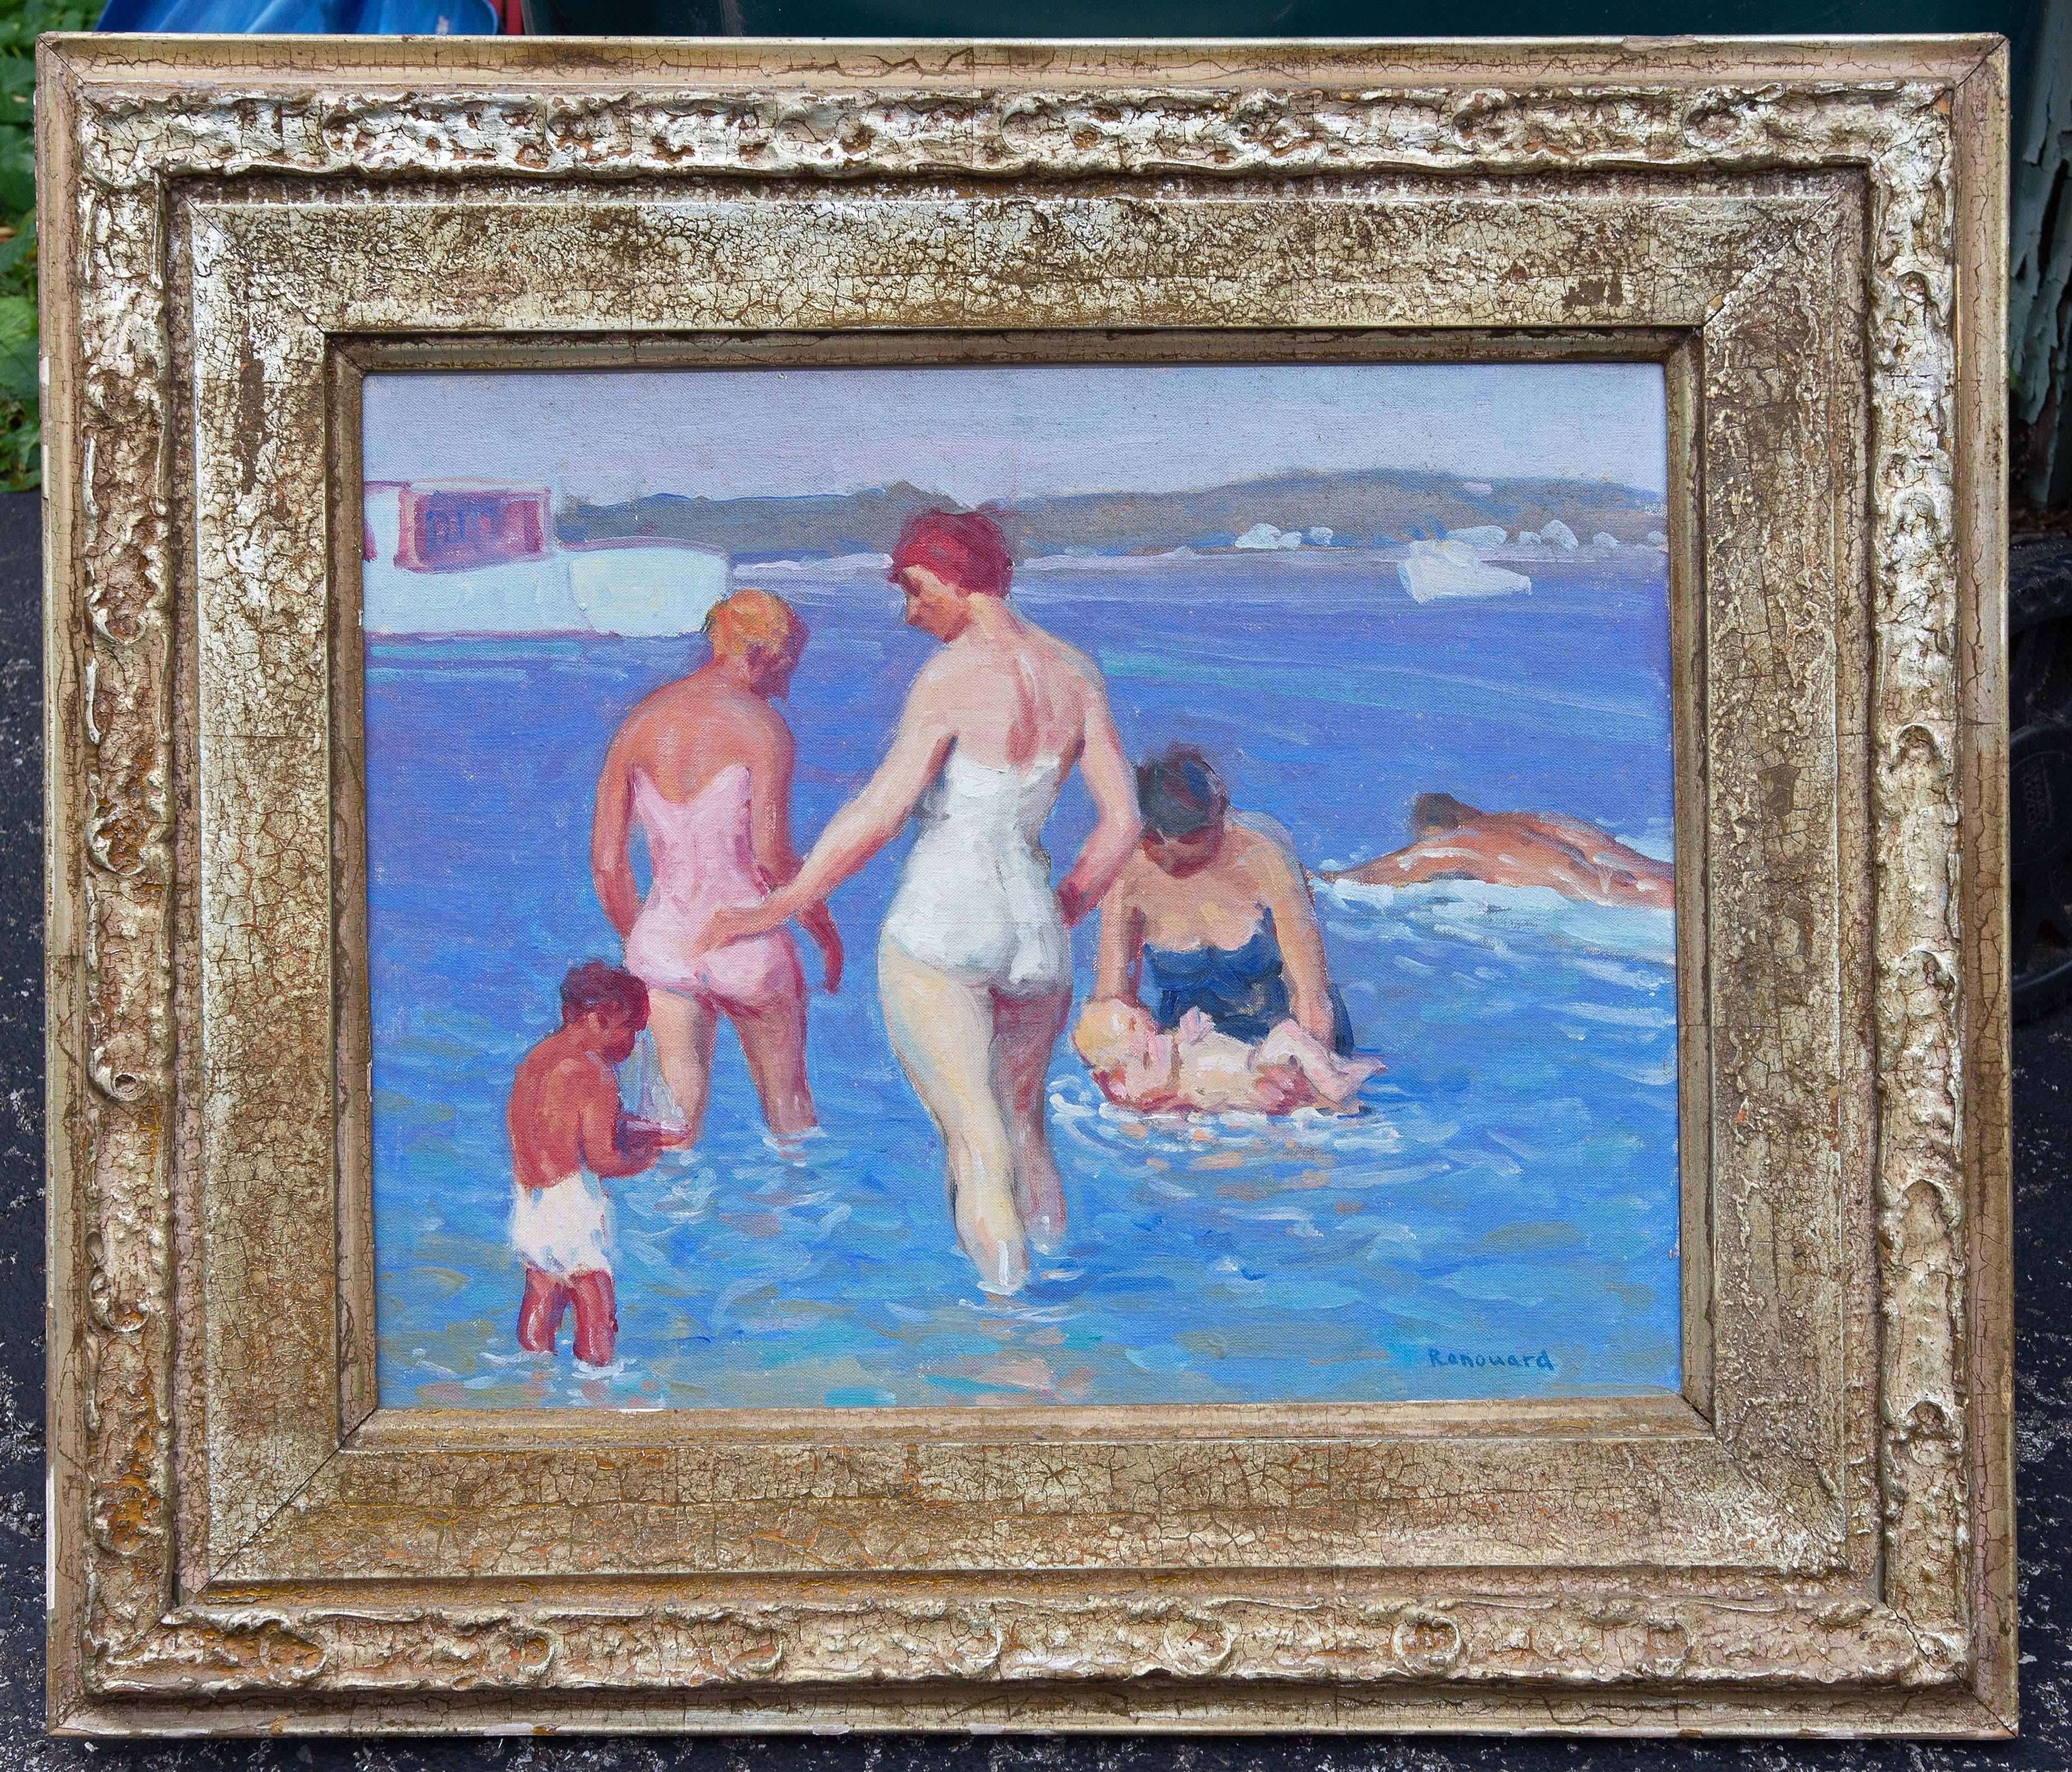 Scène de plage impressionniste américaine par George Renouard. La peinture représente une famille de baigneurs au bord de l'eau. Les figures sont tridimensionnelles. Les couleurs sont à la fois audacieuses et douces. Les peintures figuratives de